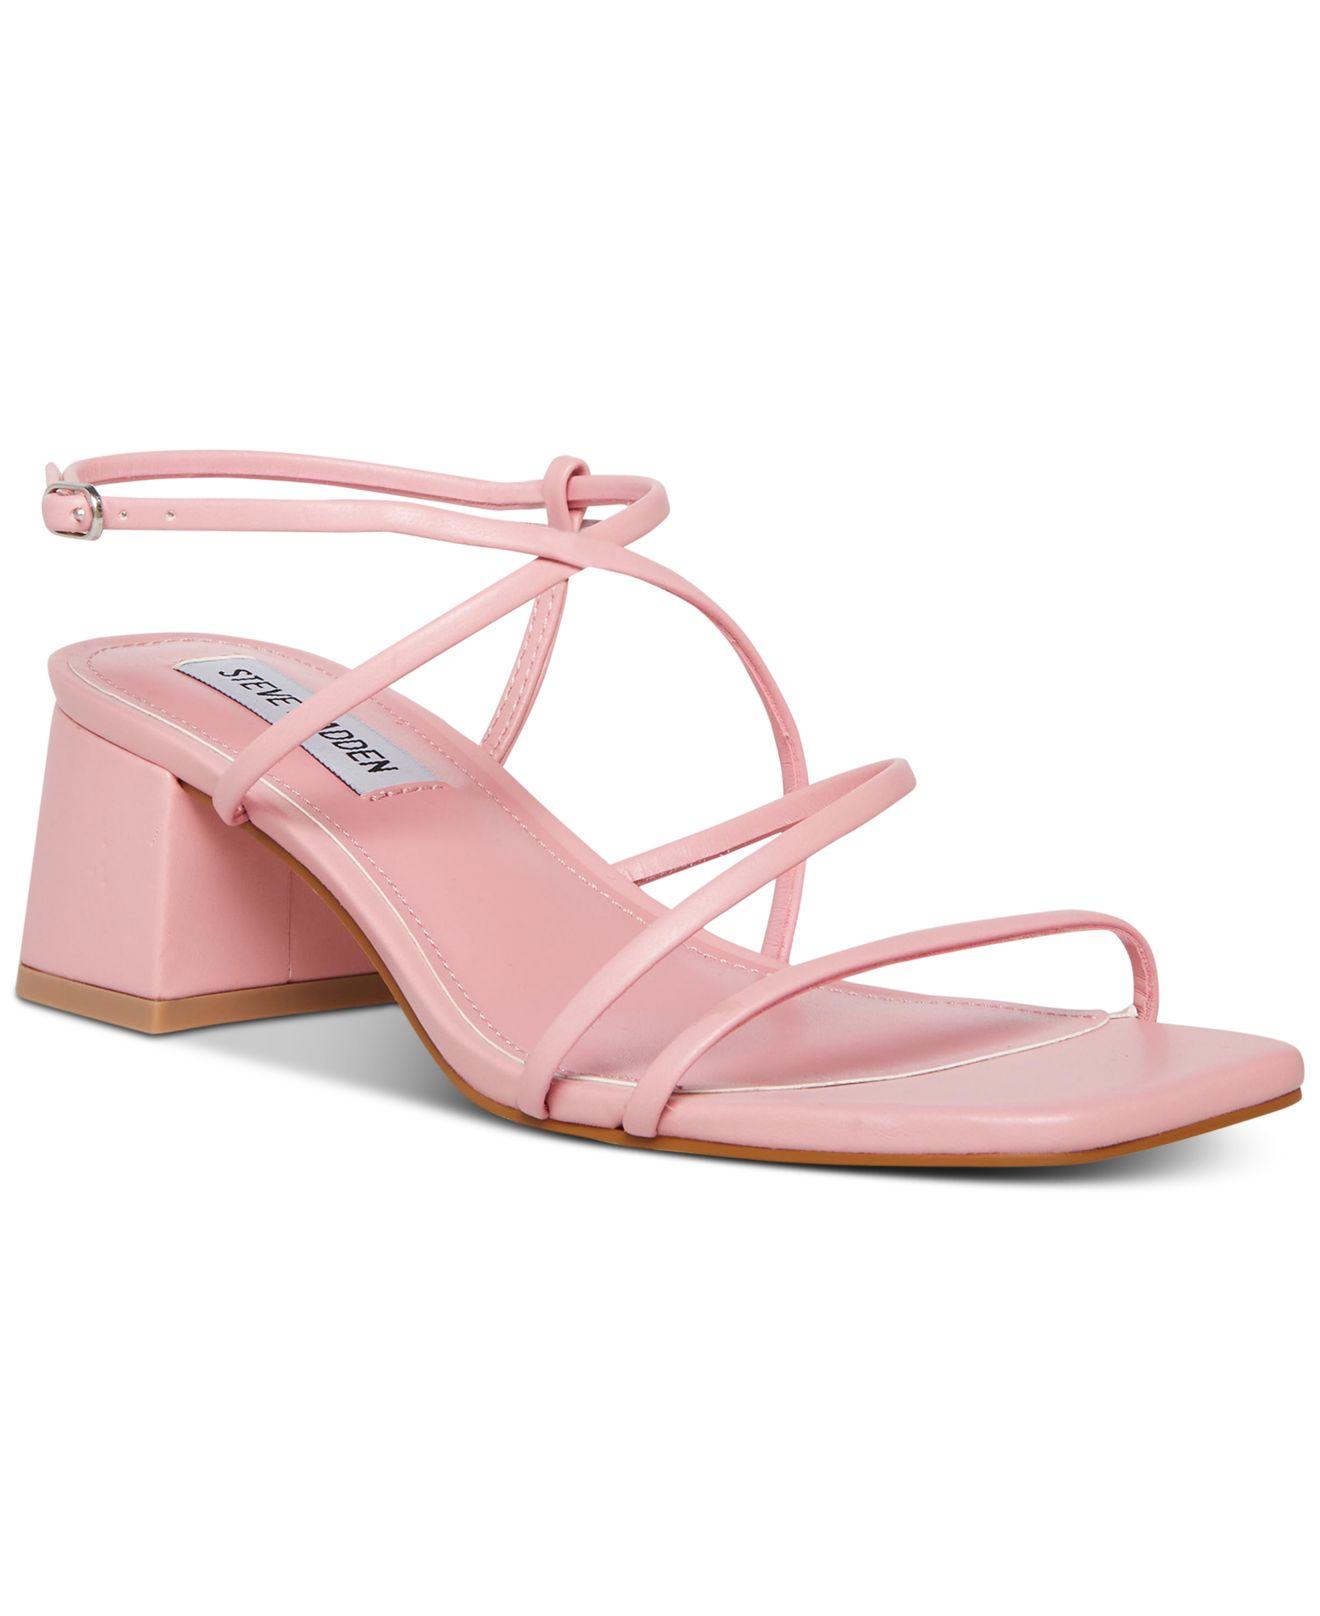 Steve Madden Rianna Strappy Block-heel Sandals in Pink | Lyst